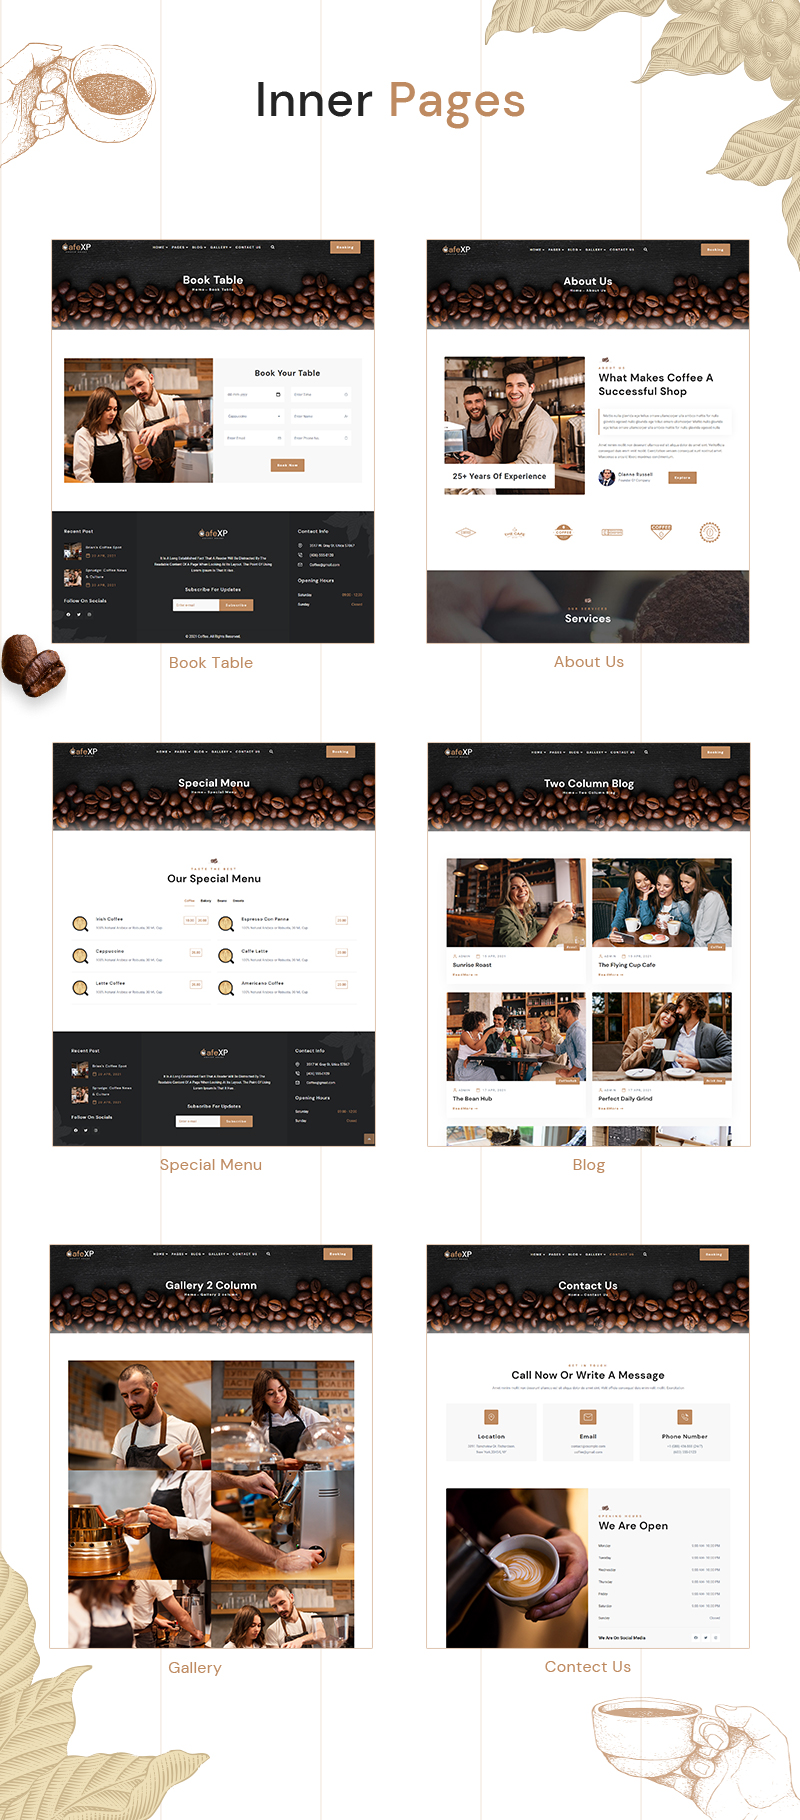 CaféXP |  Coffee Eatery WordPress Theme - 7